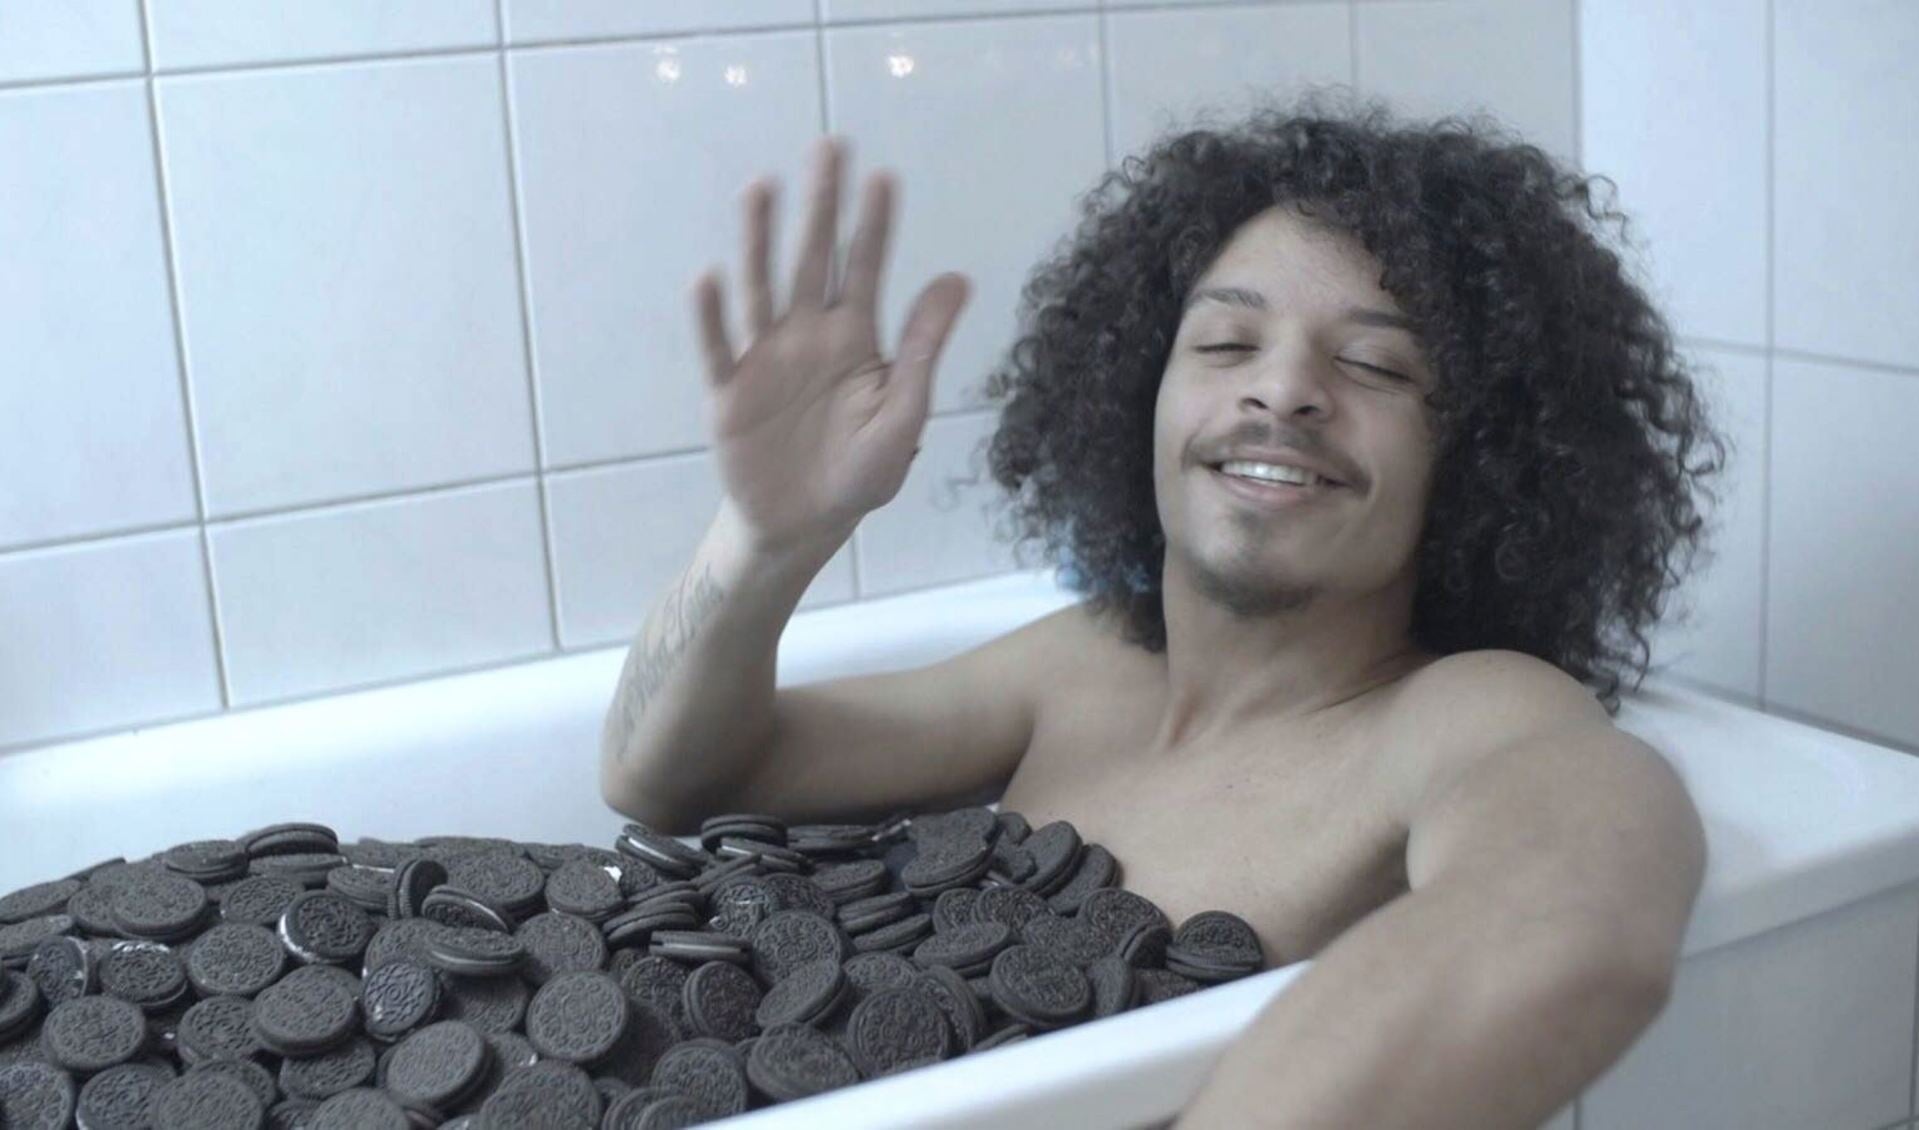 Smitje in een bad vol Oreo-koekjes. 